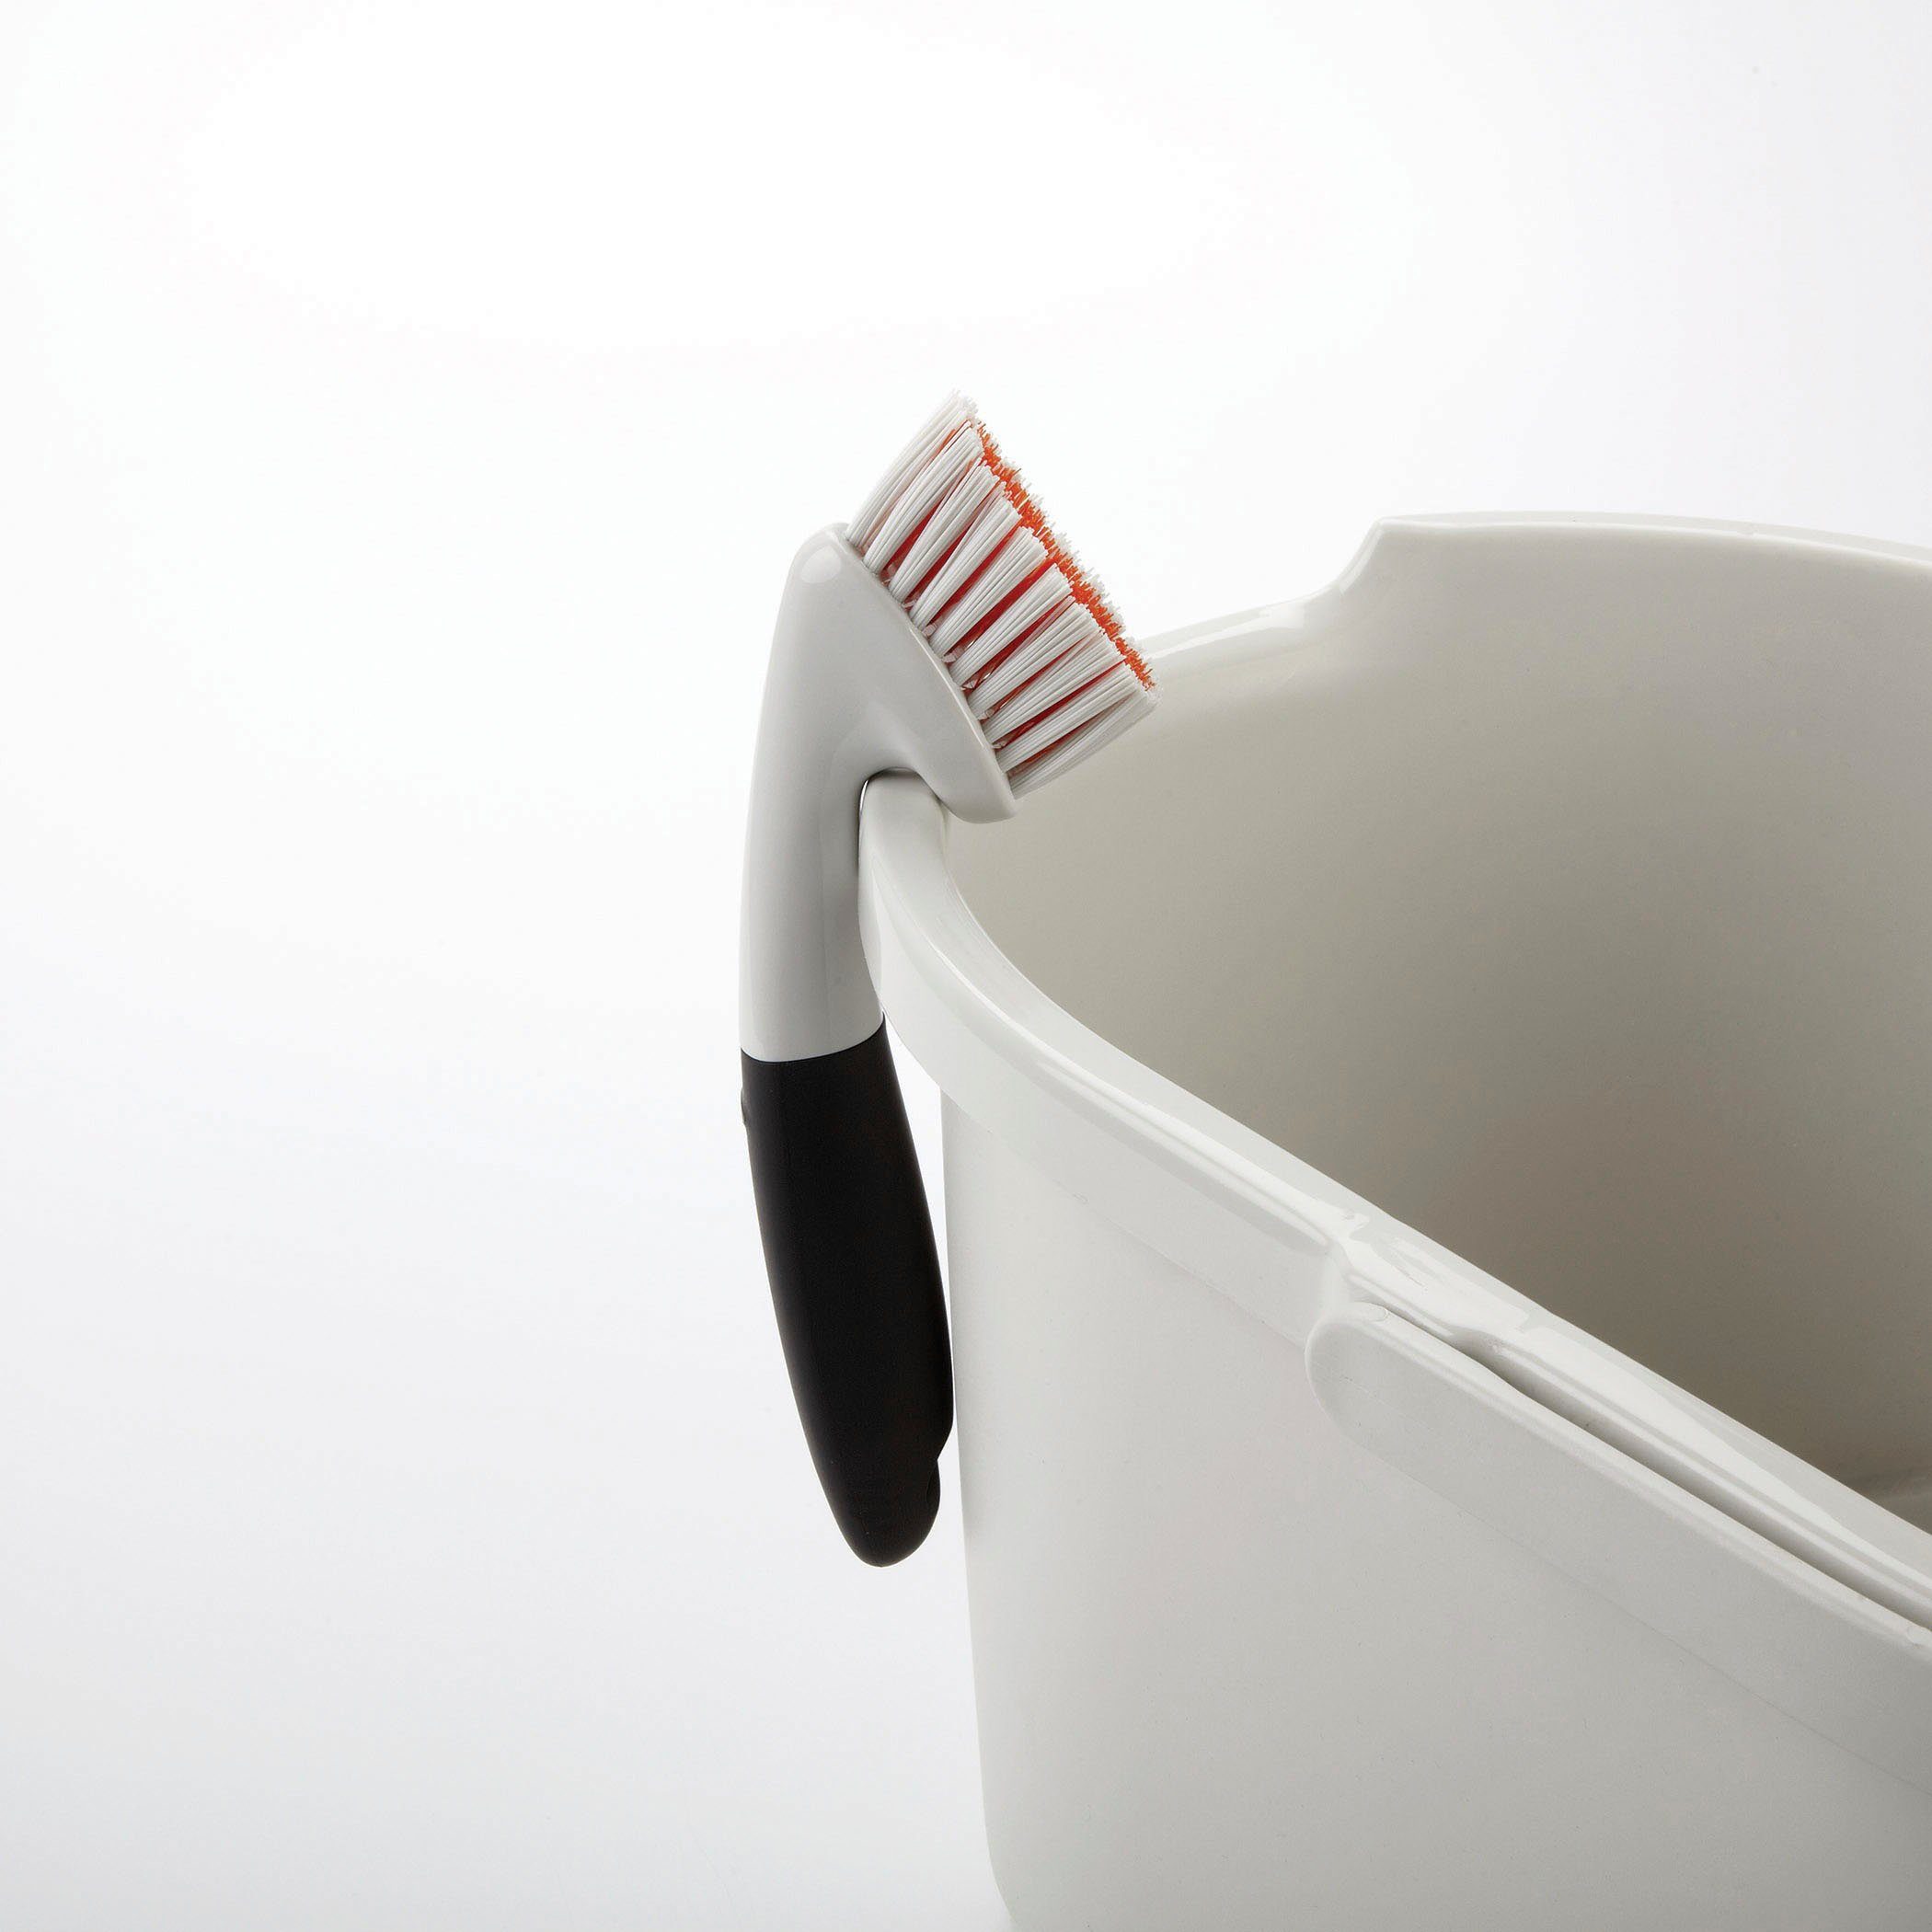 OXO Good Fugenbürste Reinigungsbürste, Grips ergonomischem Griff mit